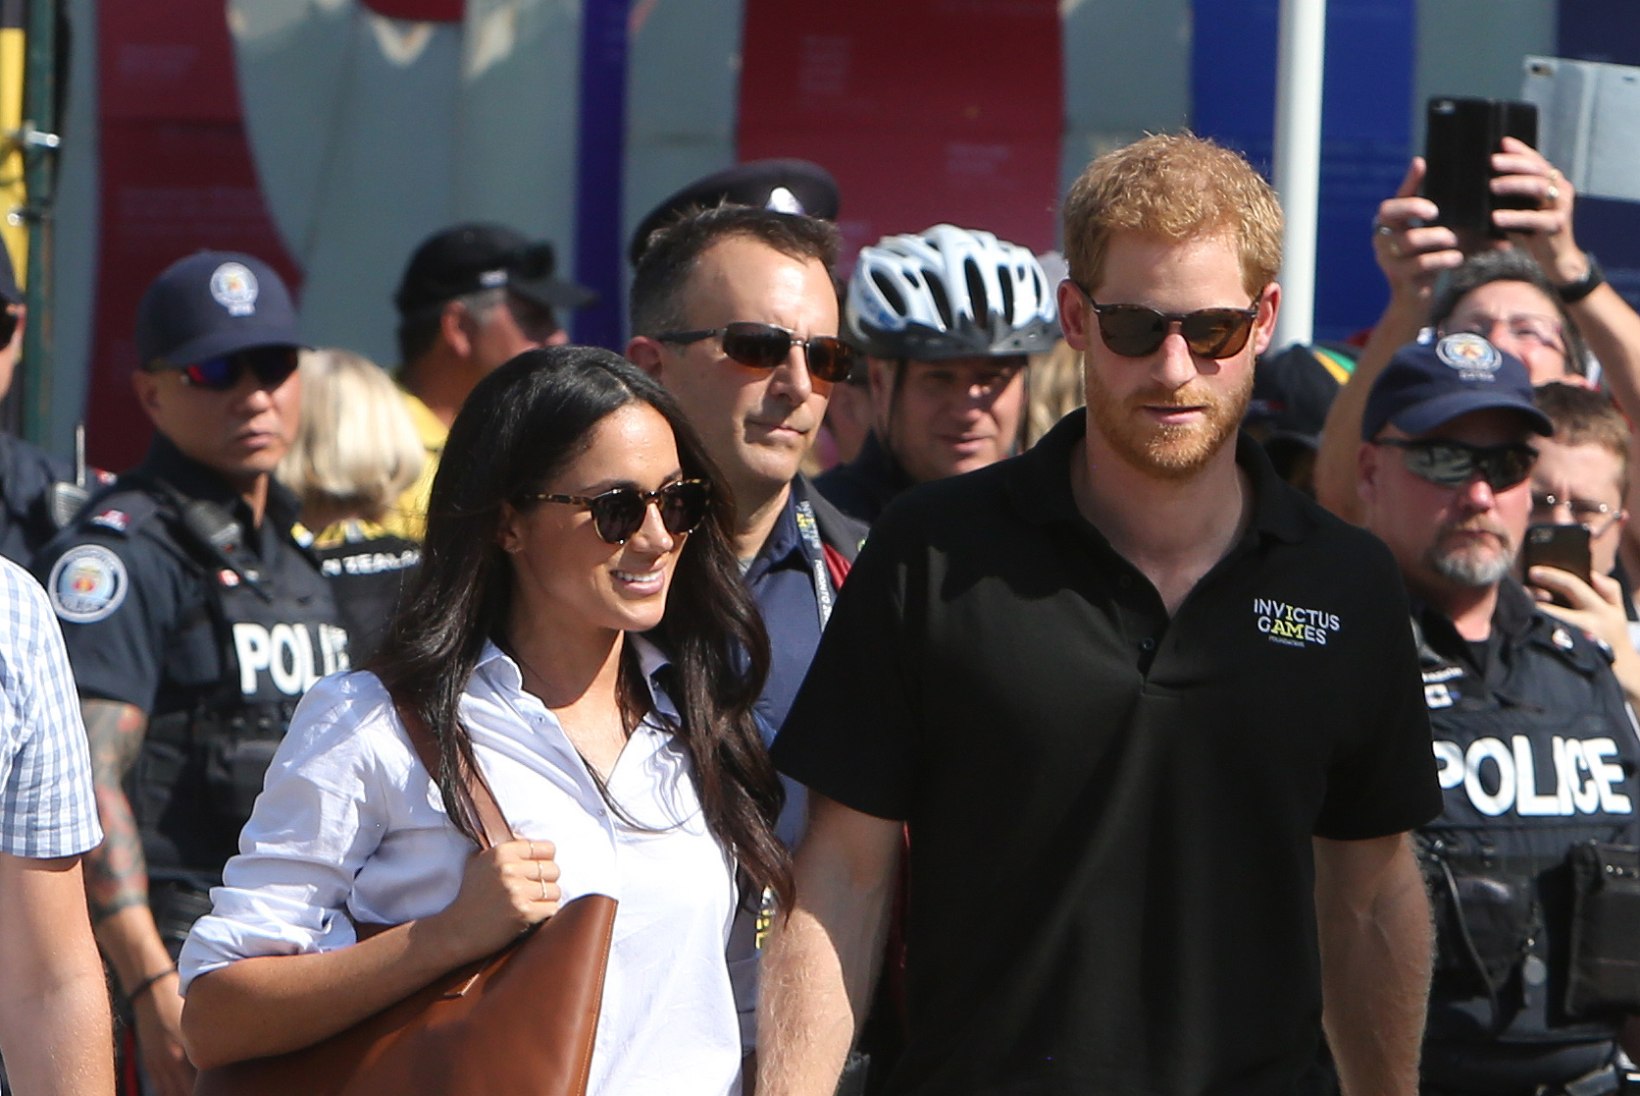 FOTOD | Prints Harry ja tema pruut kudrutasid kuninglikku etiketti eirates käsikäes